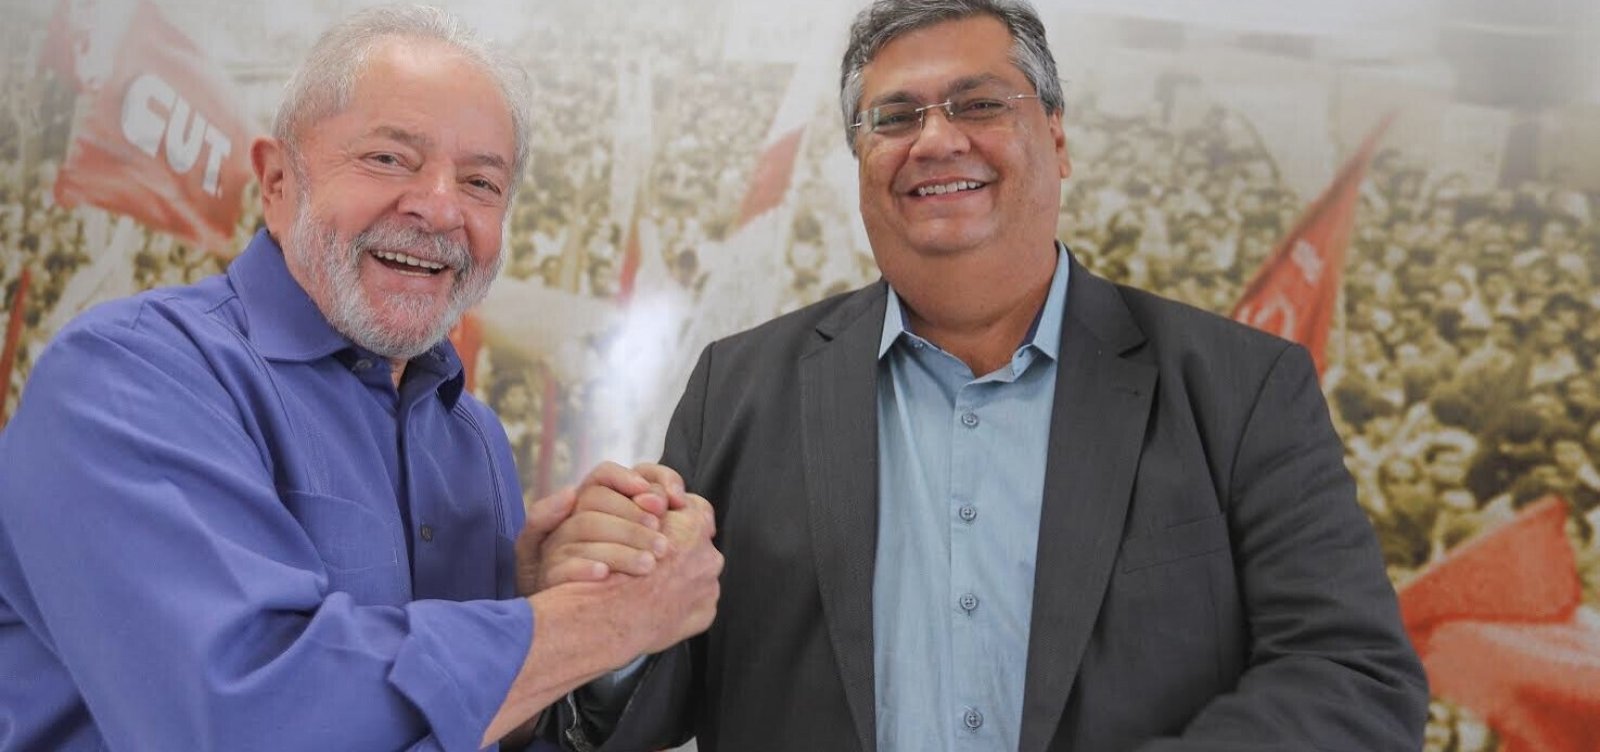 Flávio Dino pode encabeçar chapa do PT em 2022 com apoio de Lula